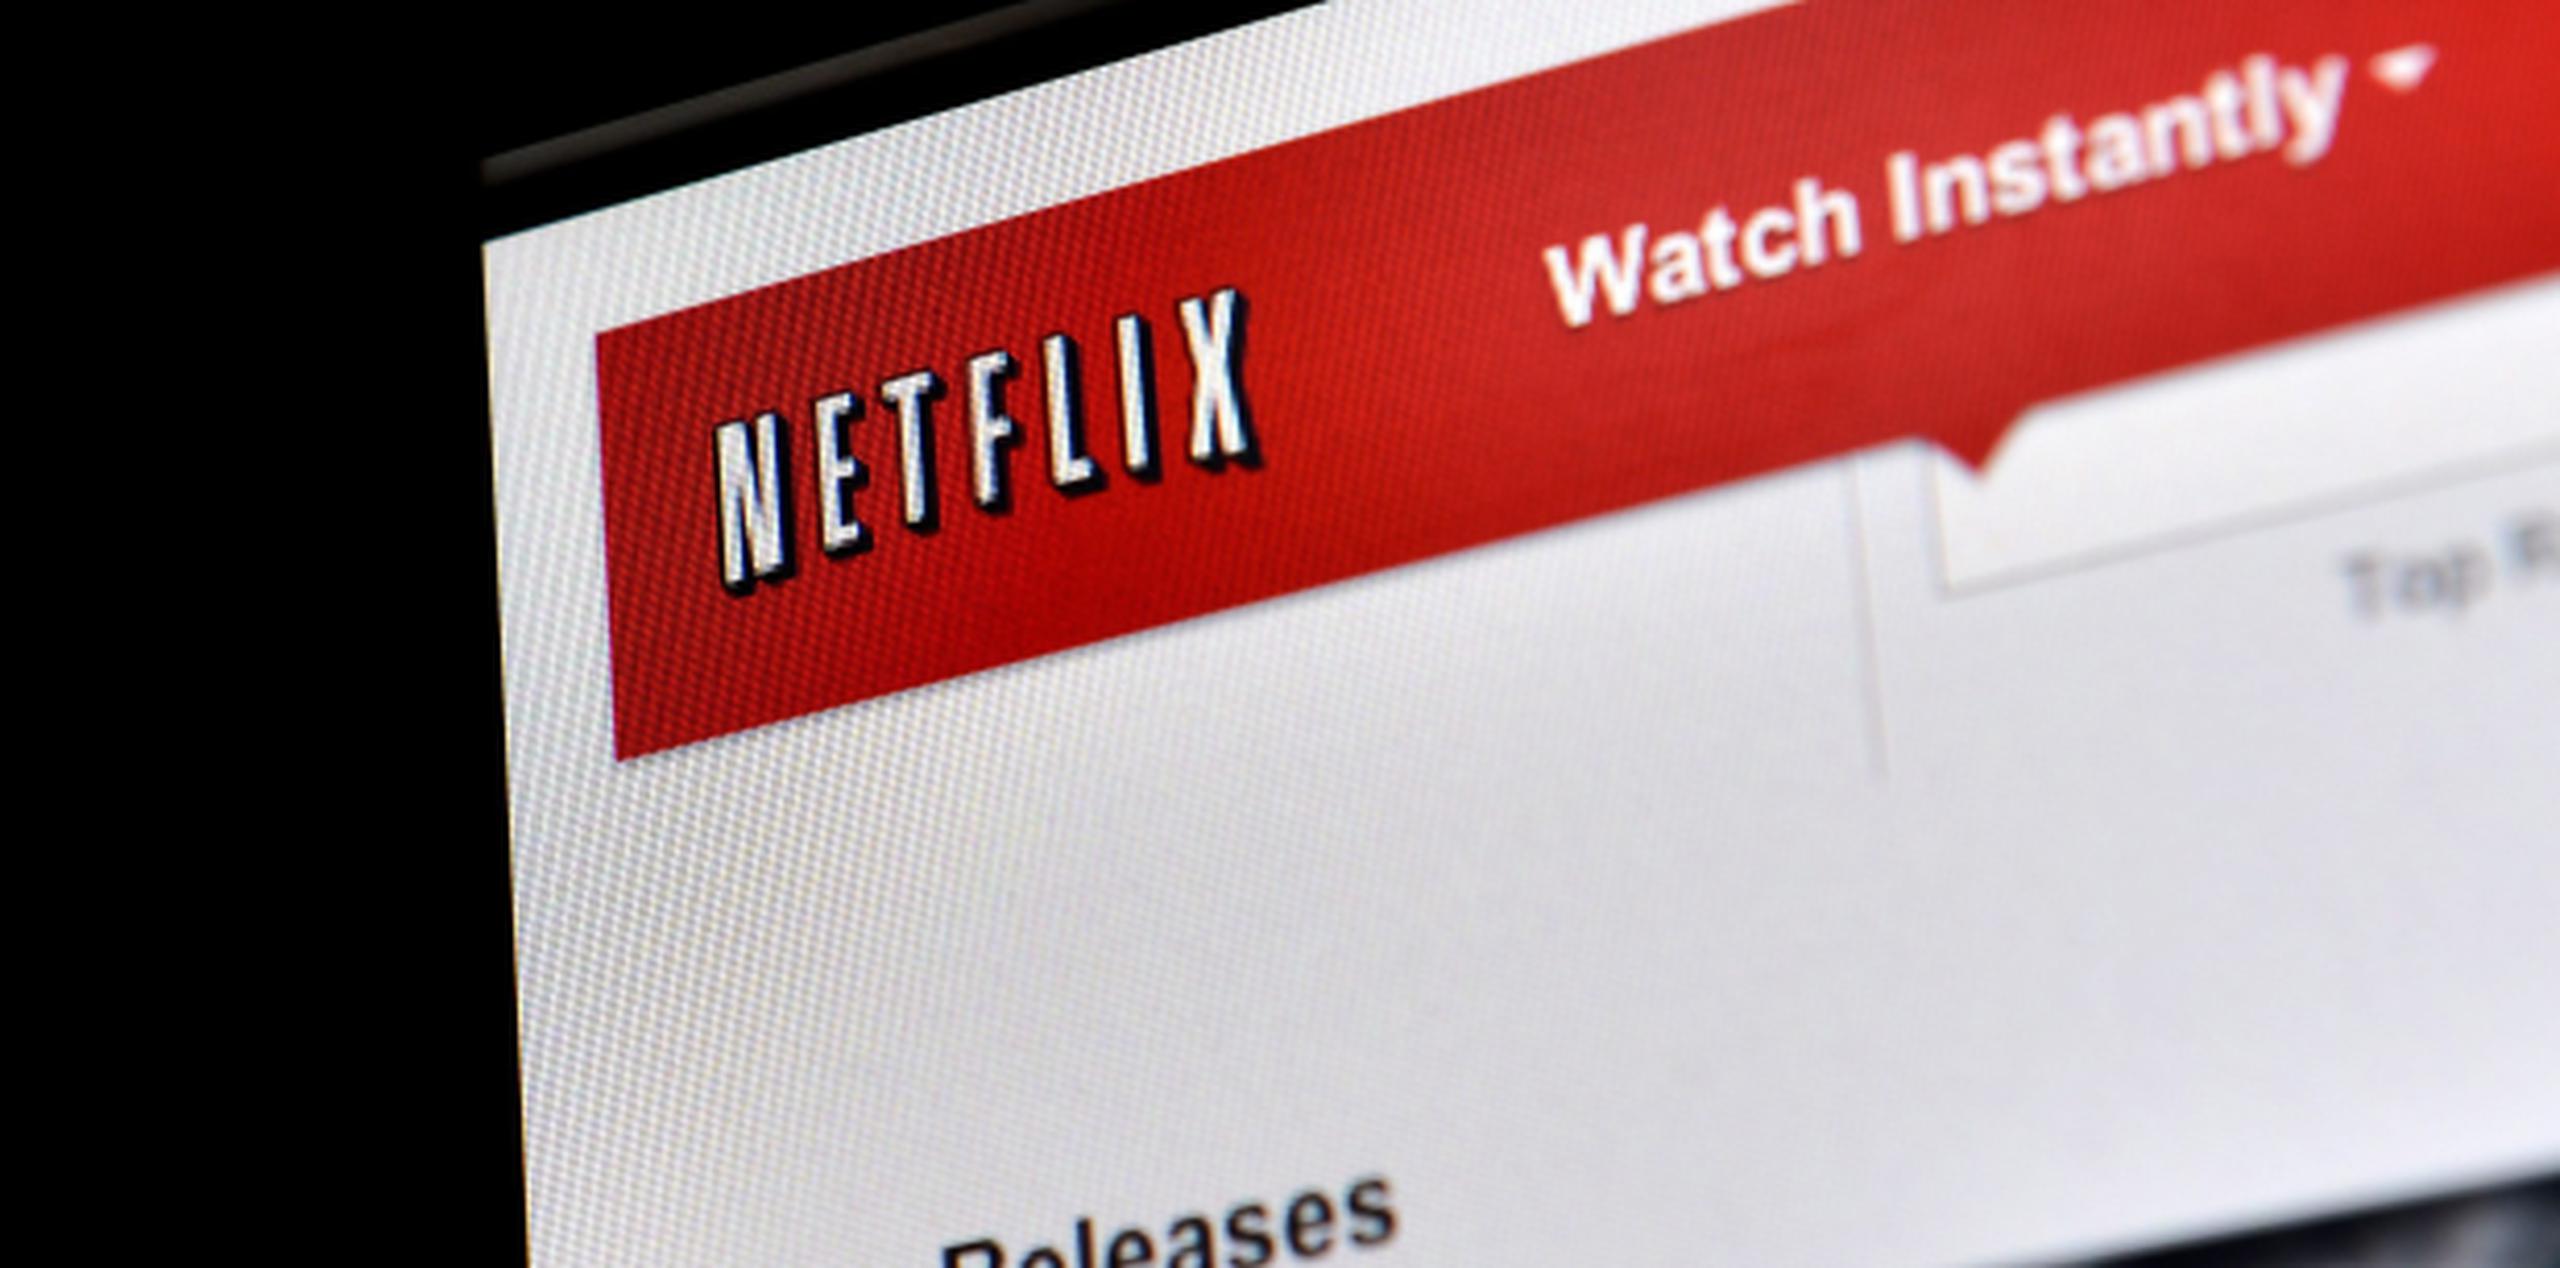 Copias piratas de "Orange" podrían afectar el aumento de suscripciones a Netflix. (EFE / Justin Lane)